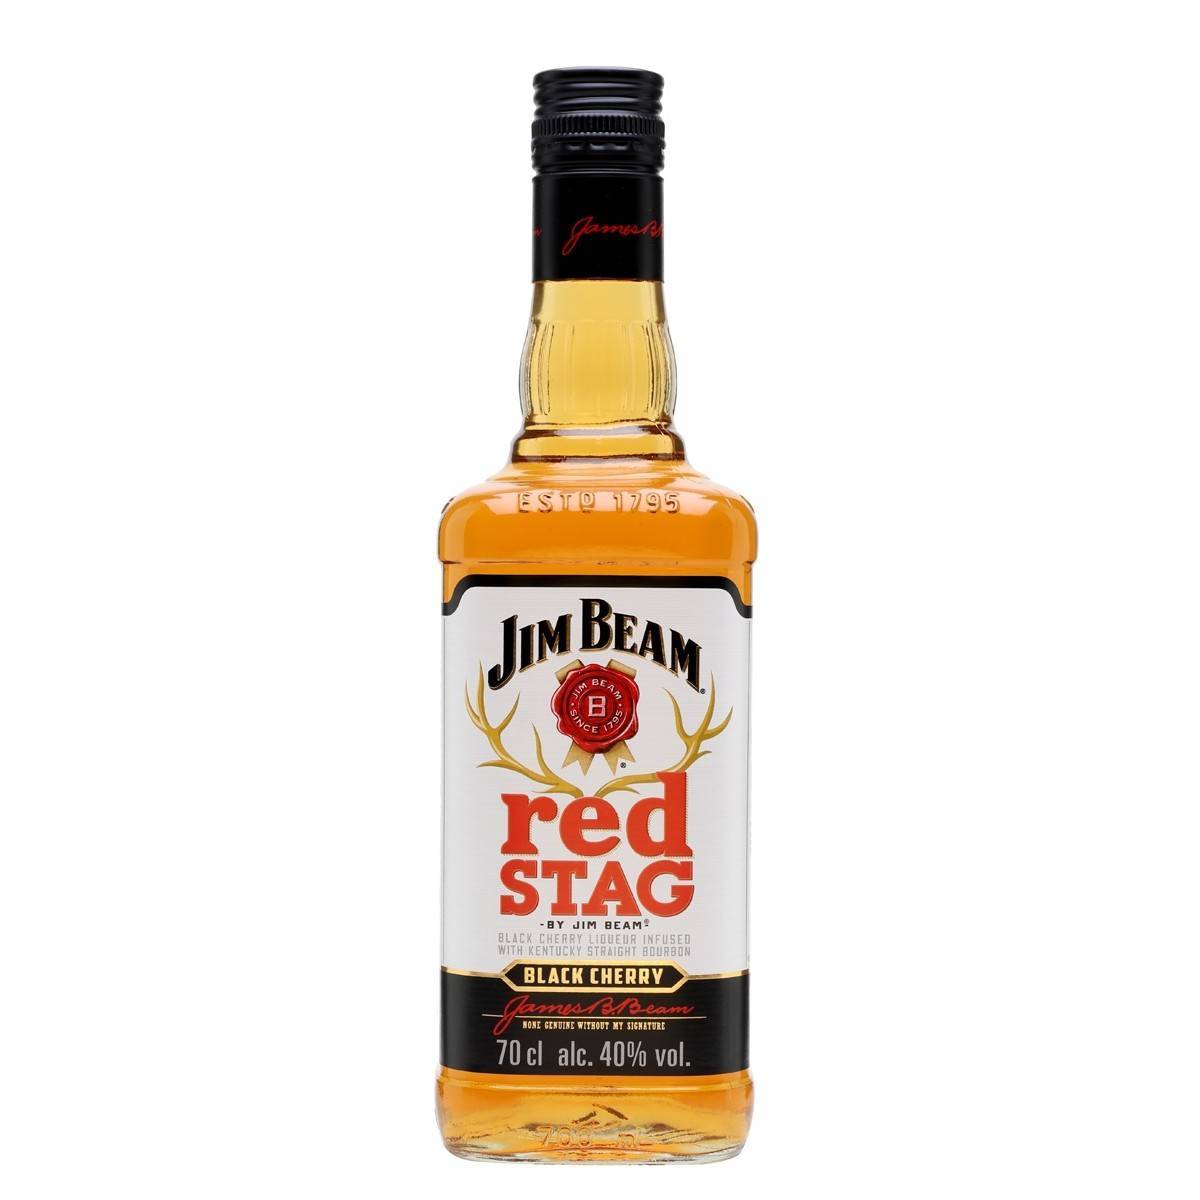 Jim beam red stag: кто и как производит вишневый виски джим бим ред стаг, разновидности бурбона, как отличить от подделки и правильно употреблять